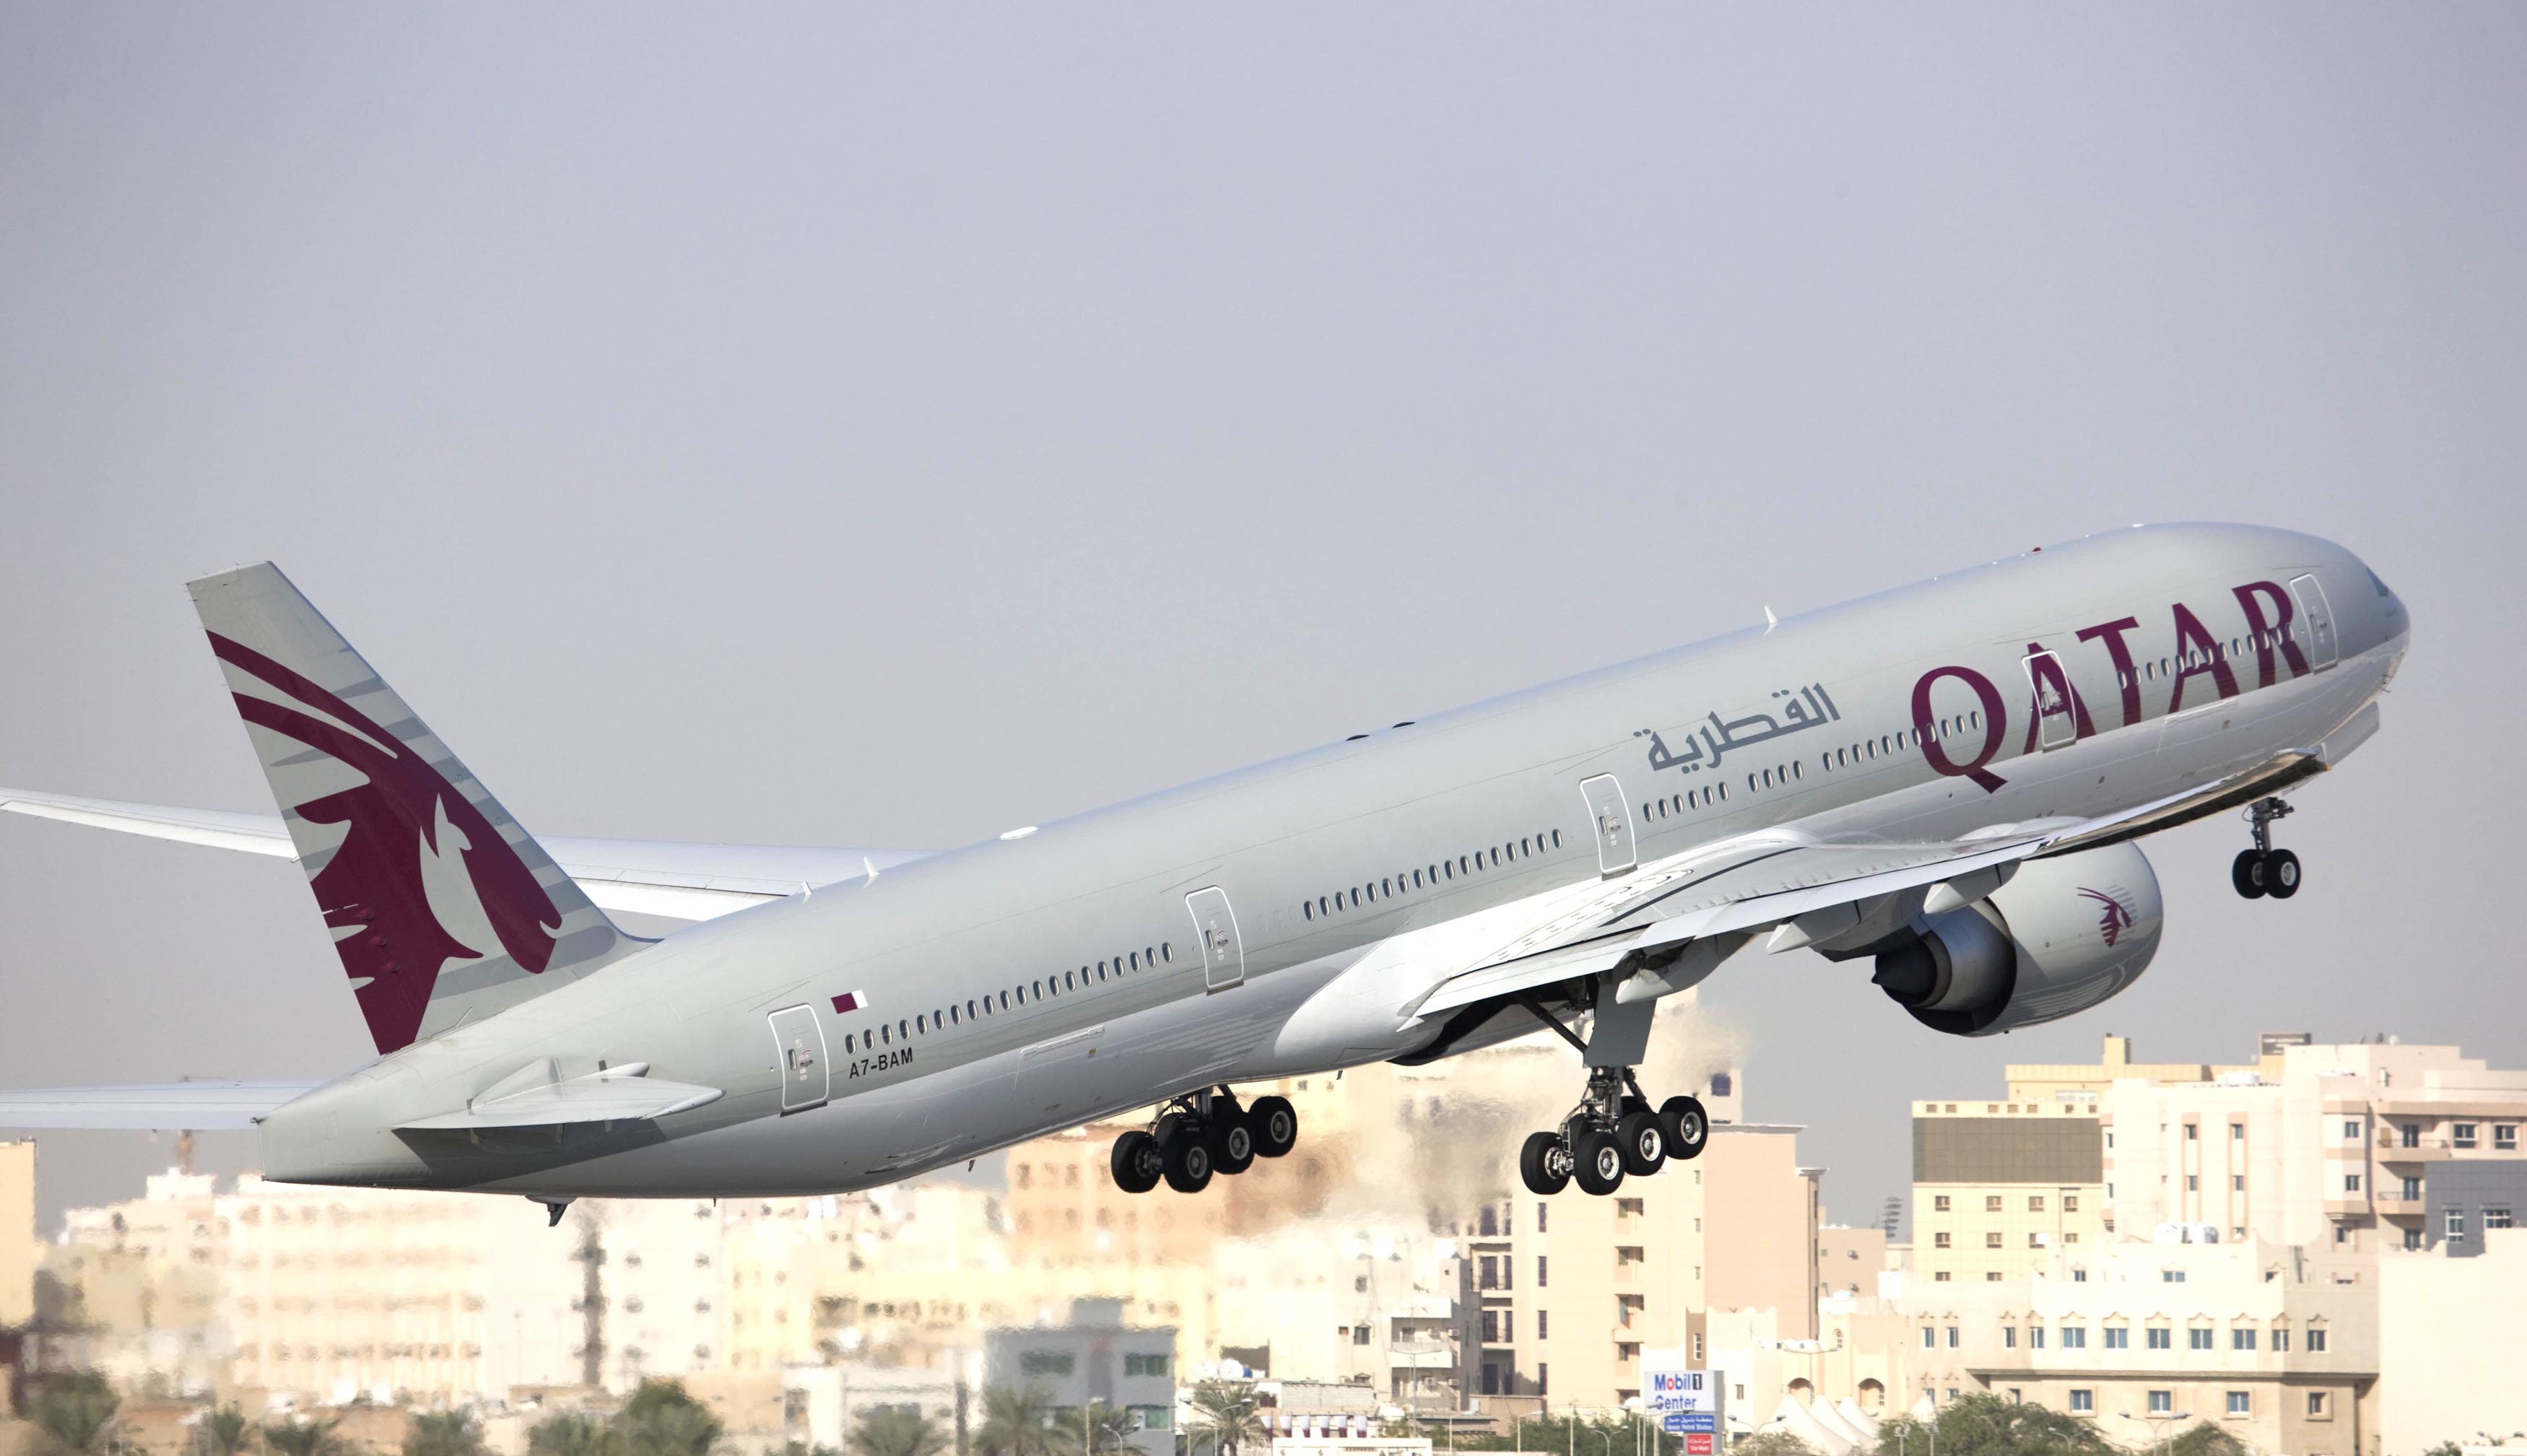 Qatar Airways regarde vers la RAM et Emirates vers Tunisair